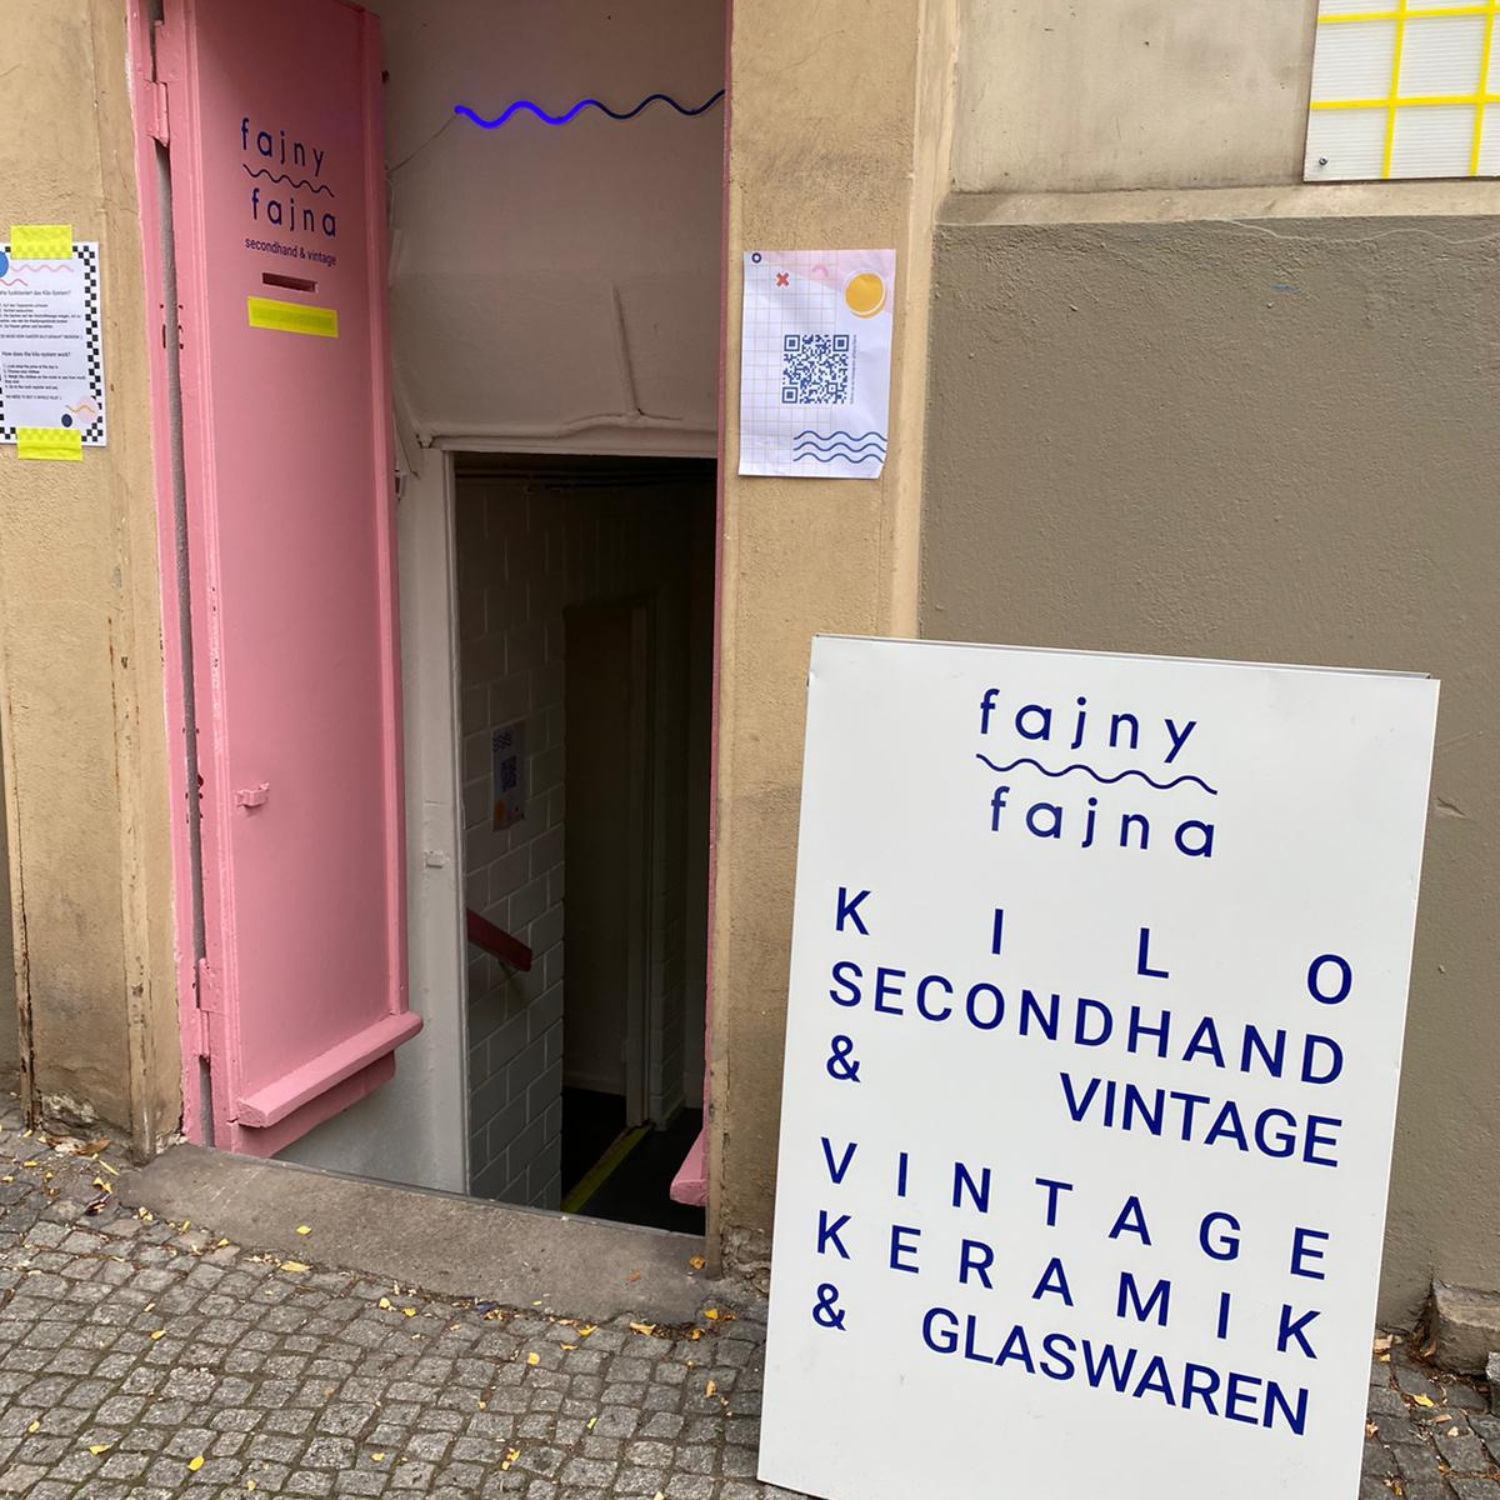 Vintage-Kleidung kaufen in Berlin Neben PIcknweight ist Fajny Fajna der zweite Vintage-Kleiderladen im Bergmannkiez, den wir euch wärmstens empfehlen wollen.